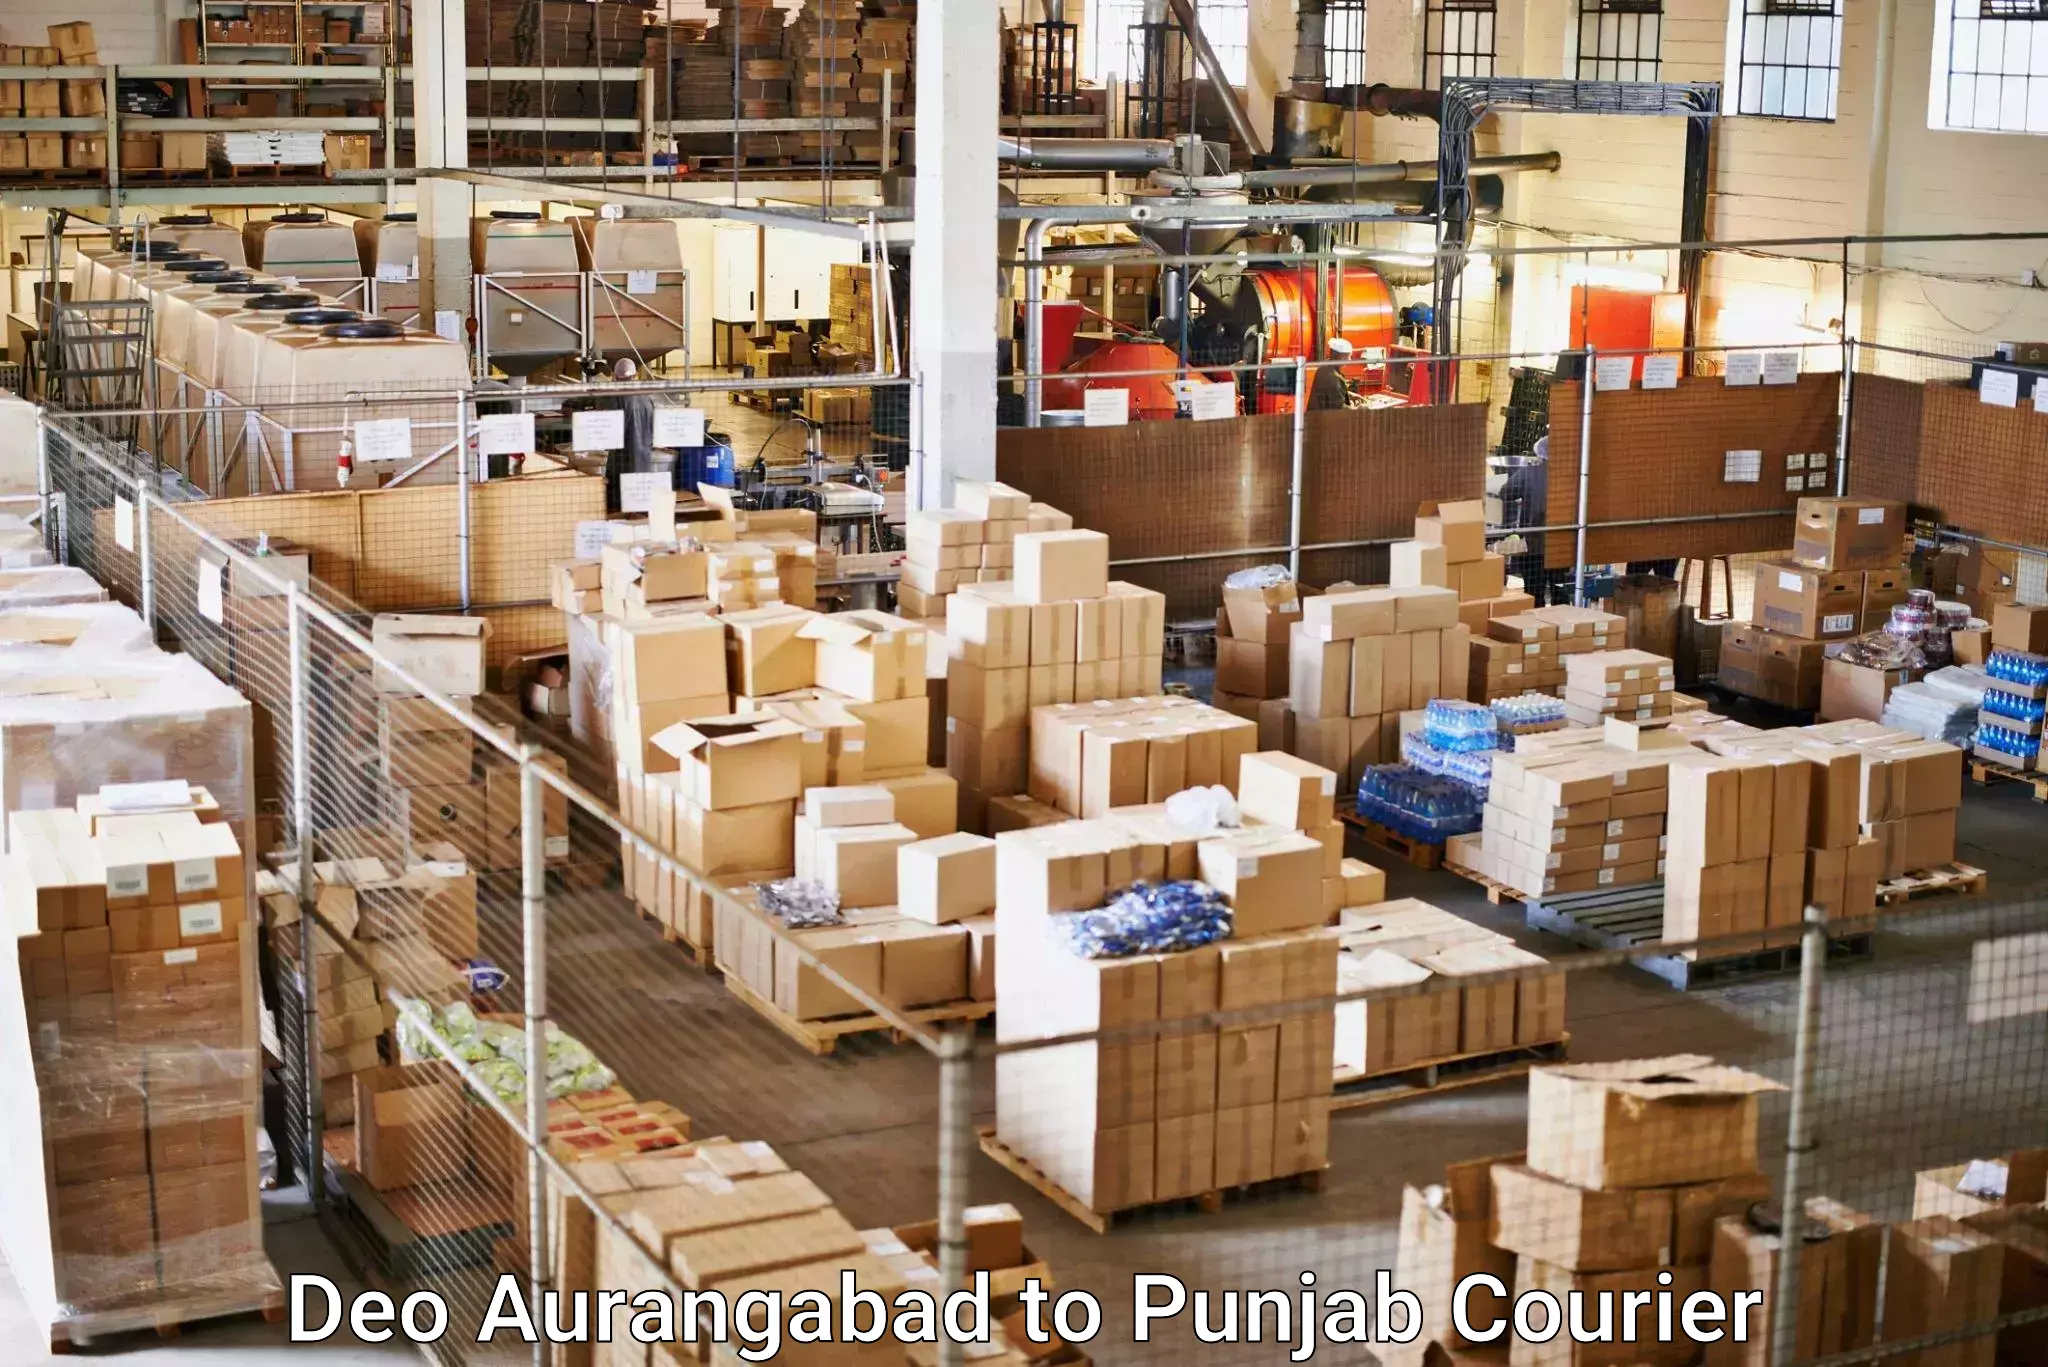 Express courier facilities Deo Aurangabad to Punjab